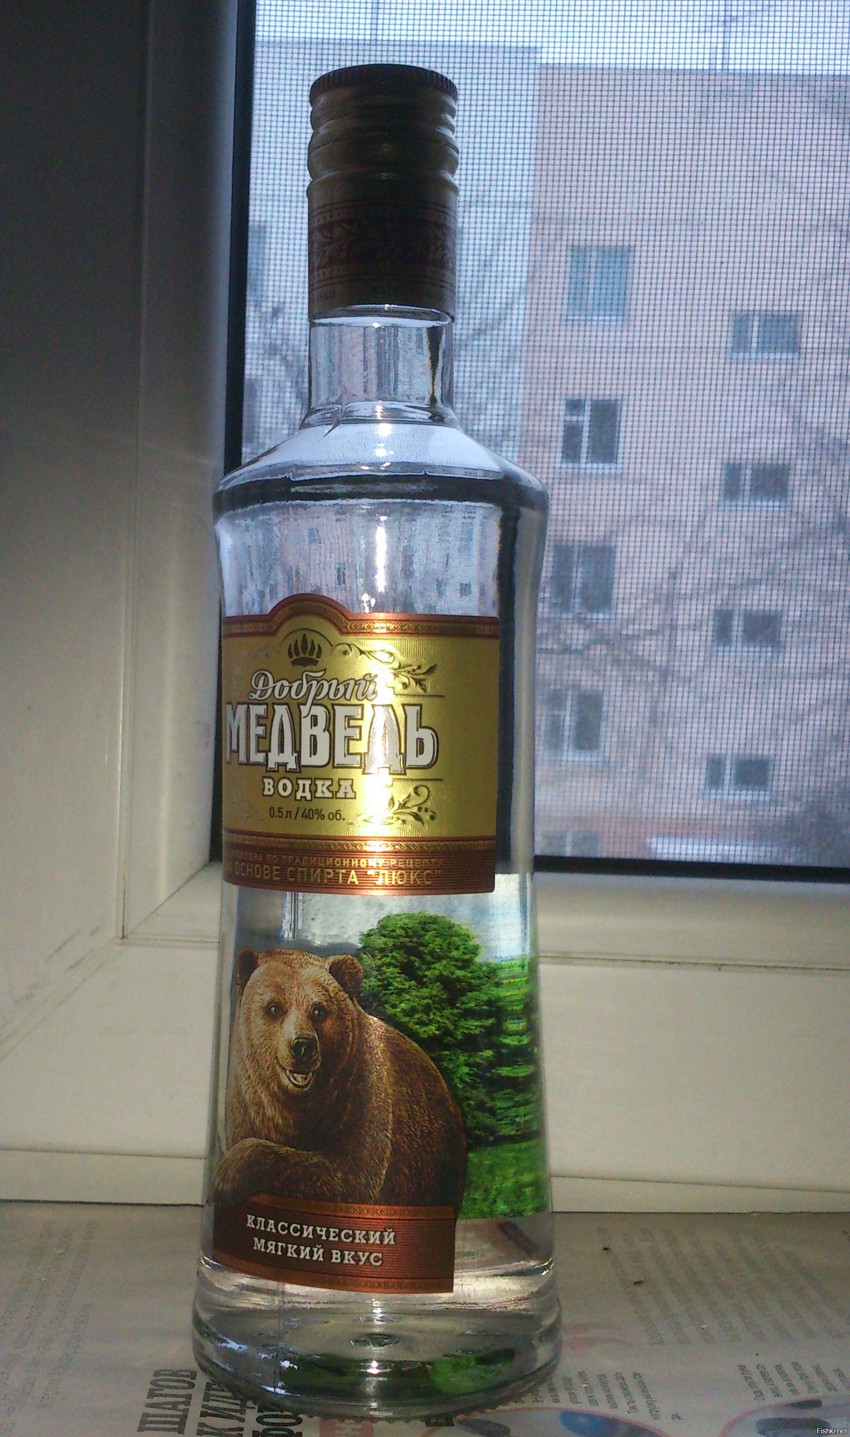 Тут "политически подкованную" бутылочку купил, с медведем